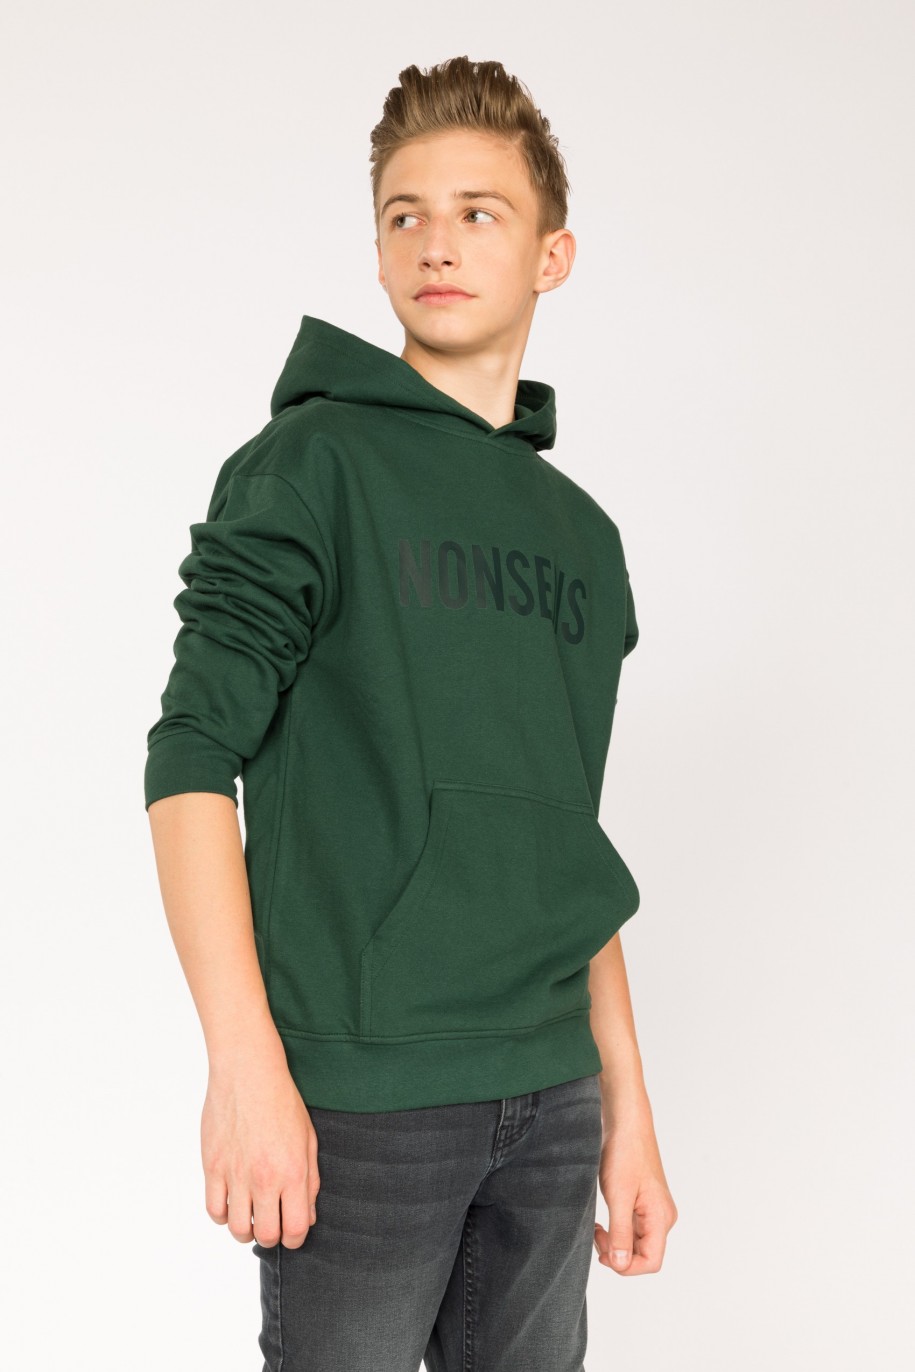 Zielona bluza dla chłopaka z kapturem NONSENS - 29583